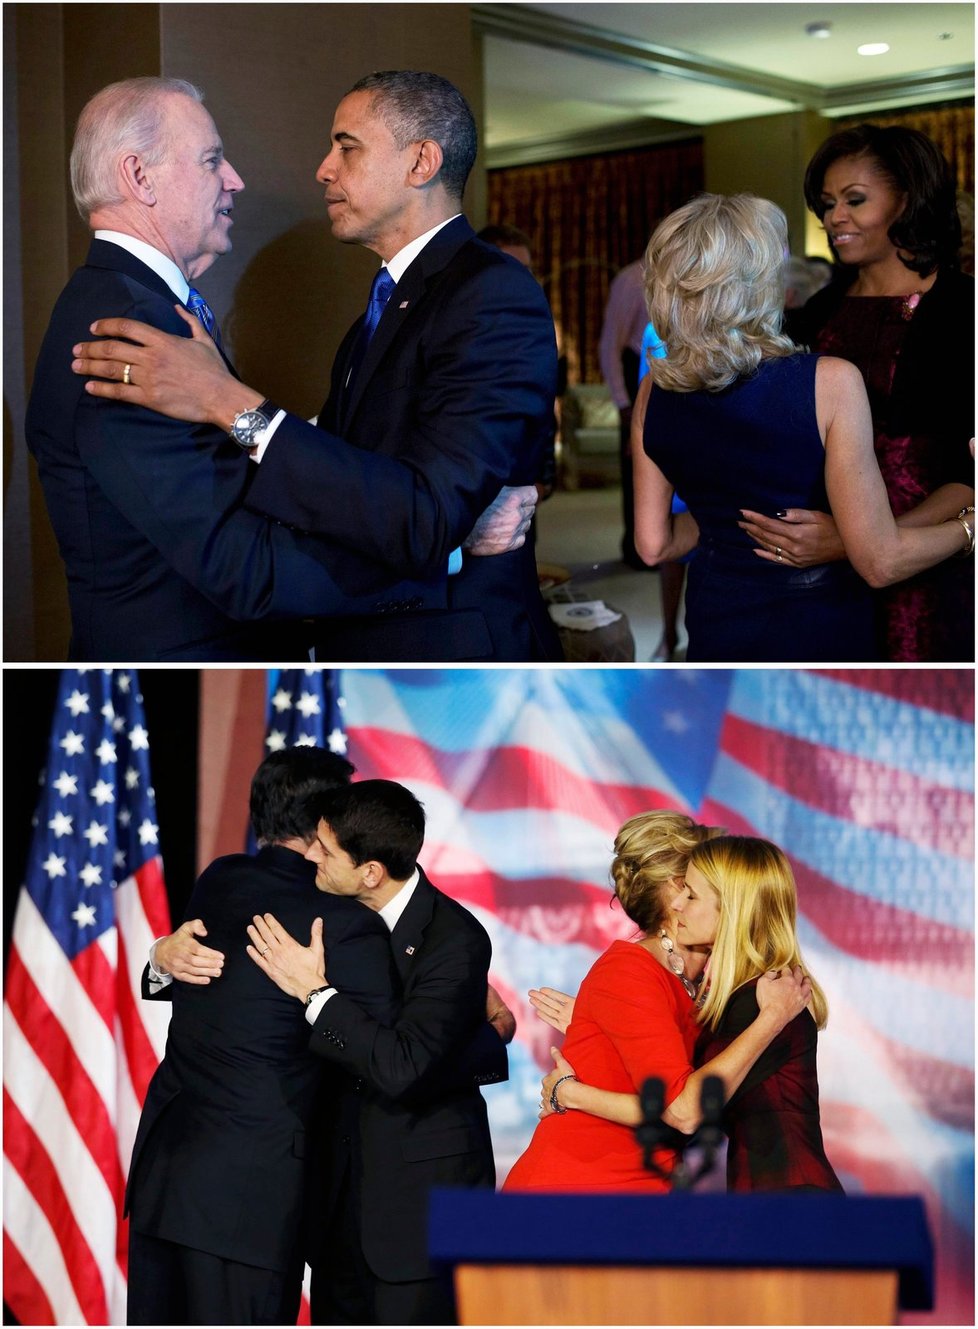 Srovnání ze štábu demokratů a republikánů: Nahoře Obama a viceprezident Joe Biden s manželkami, dole Mitt Romney a Paul Ryan